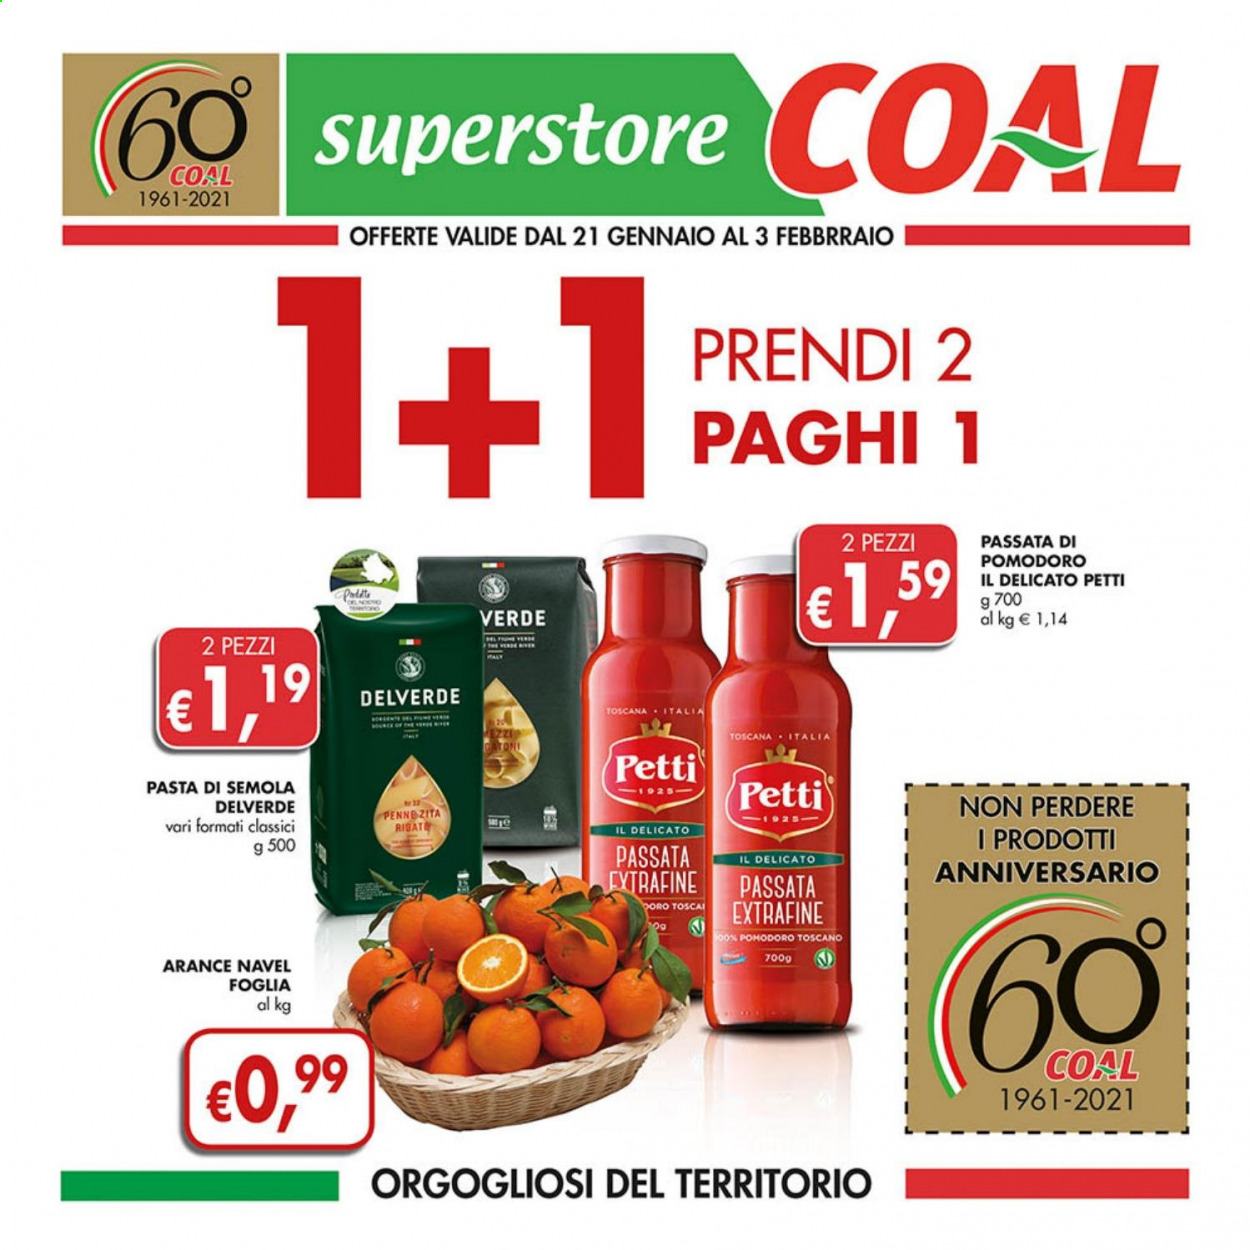 thumbnail - Volantino COAL - 21/1/2021 - 3/2/2021 - Prodotti in offerta - arance, arancie Navel, passata di pomodoro, Petti, pasta, penne, Delverde. Pagina 1.